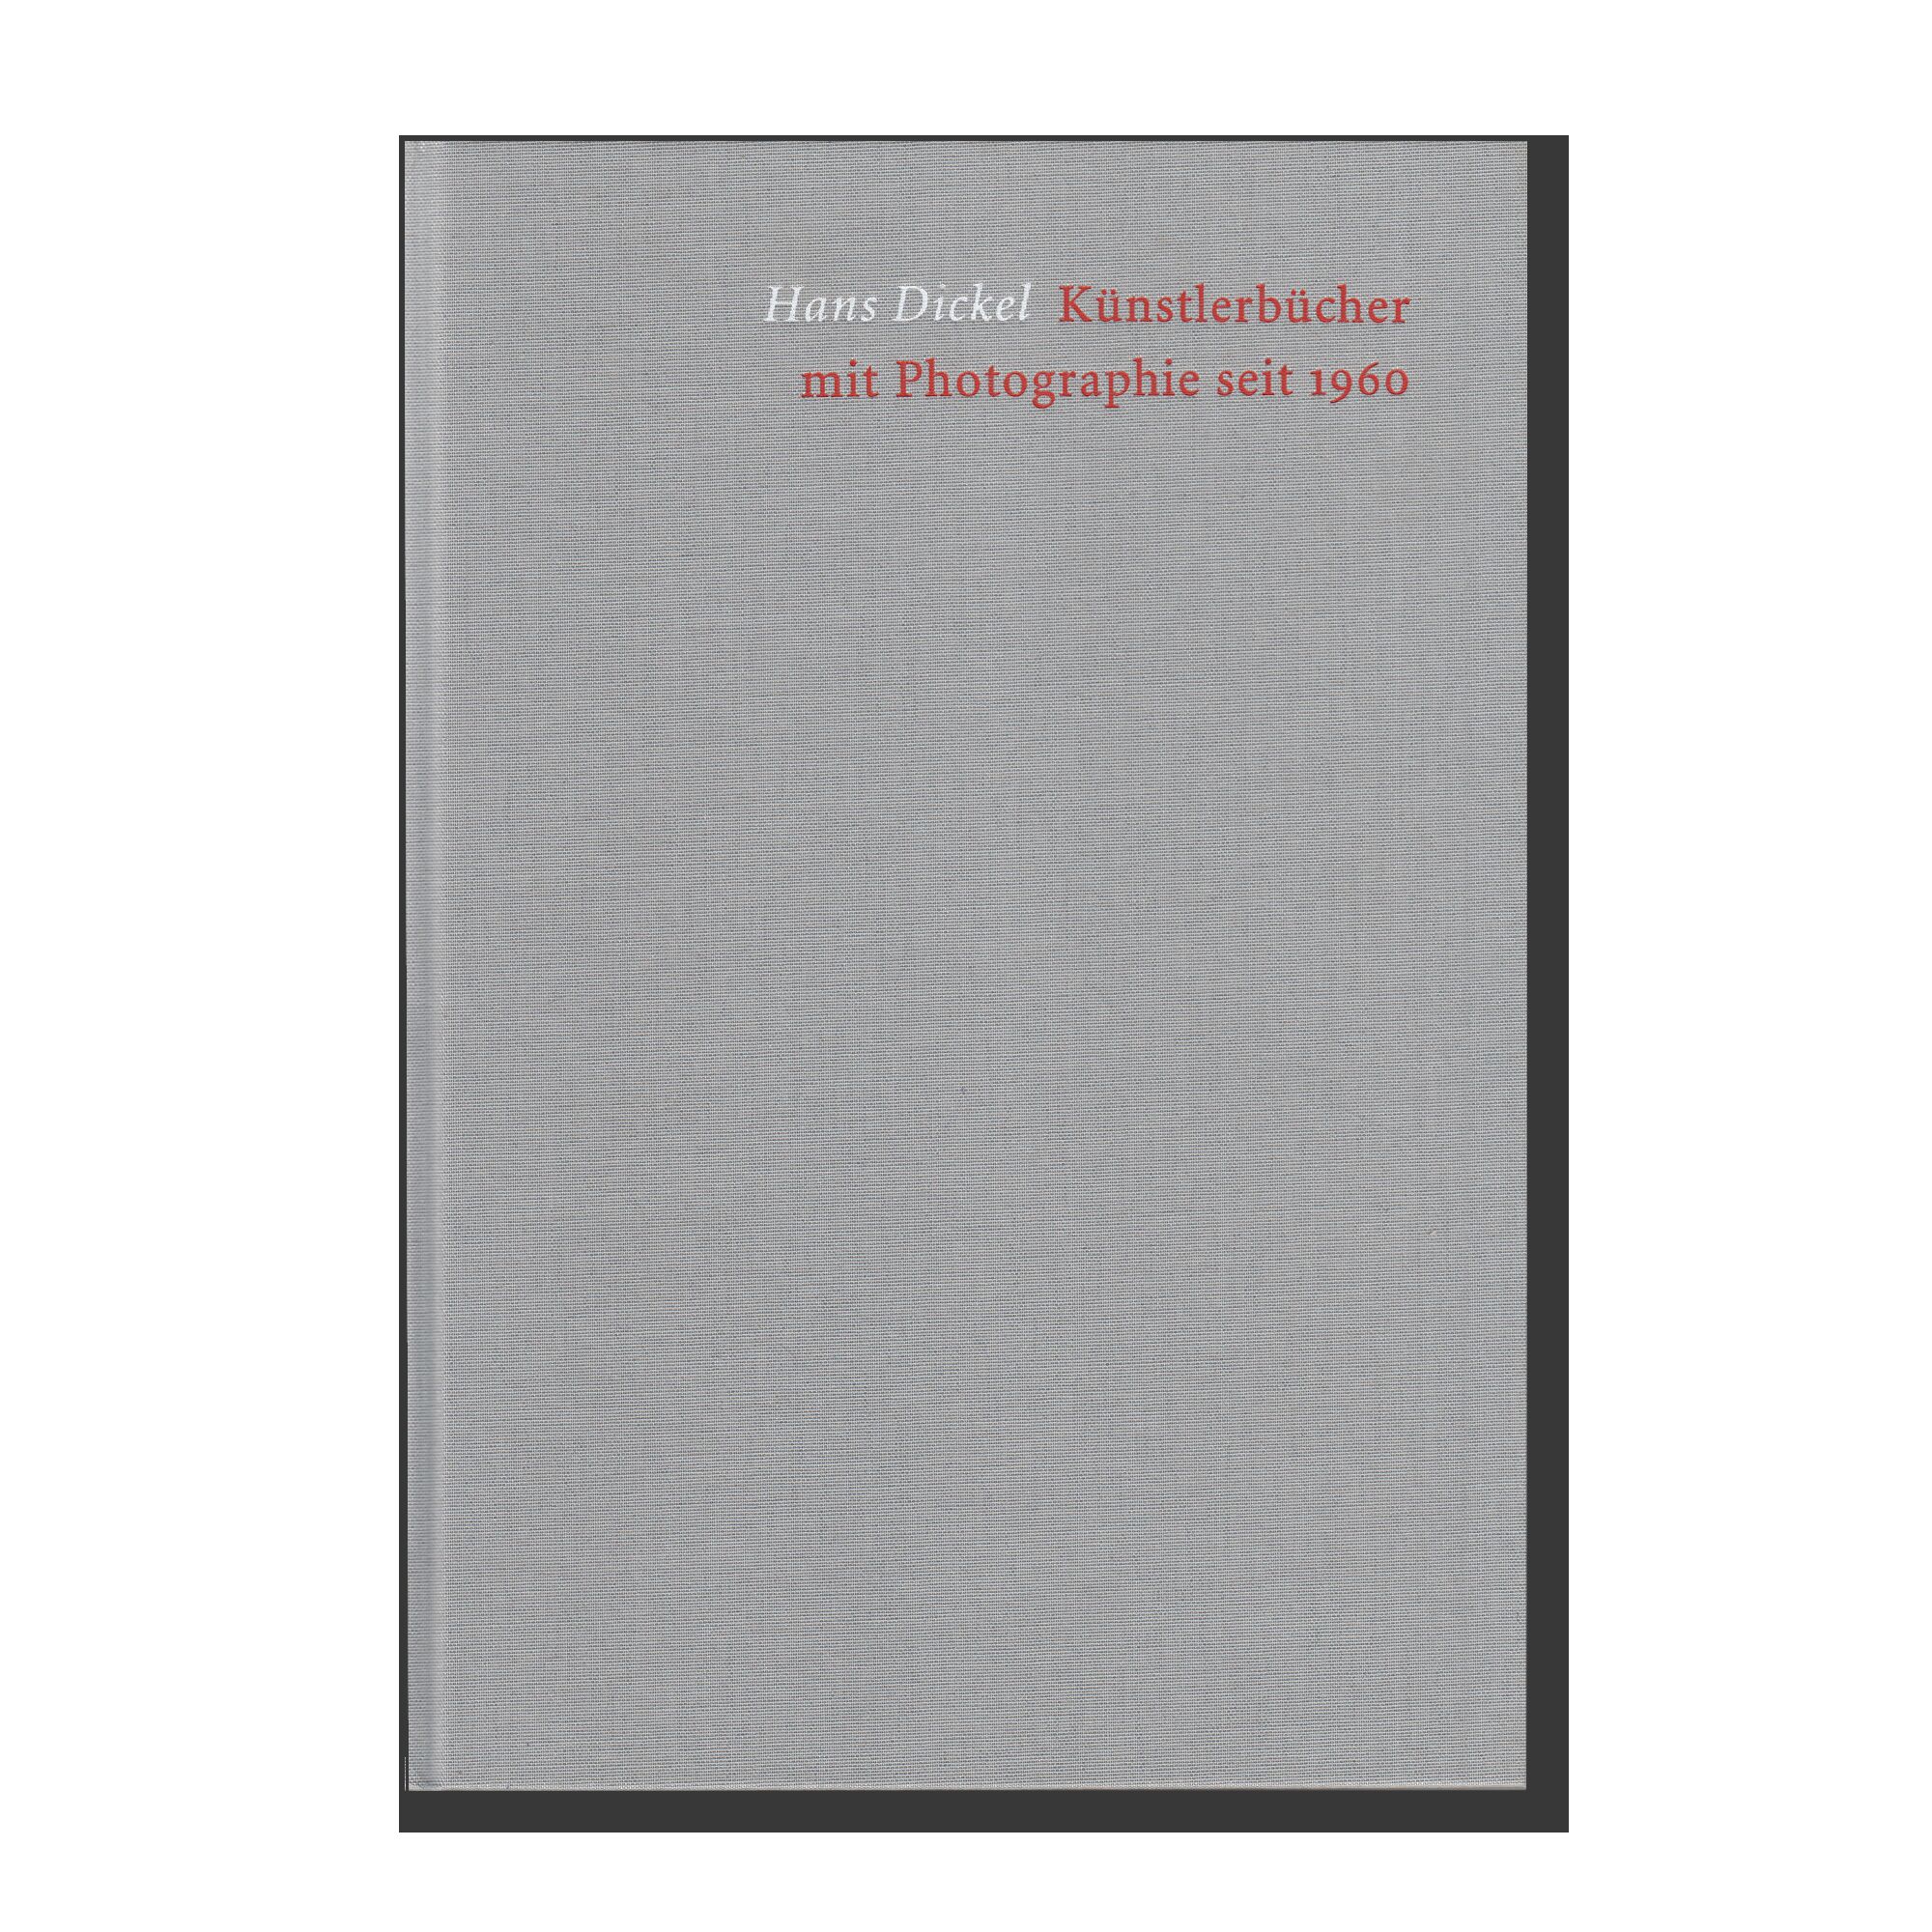 Künstlerbücher mit Photographie seit 1960